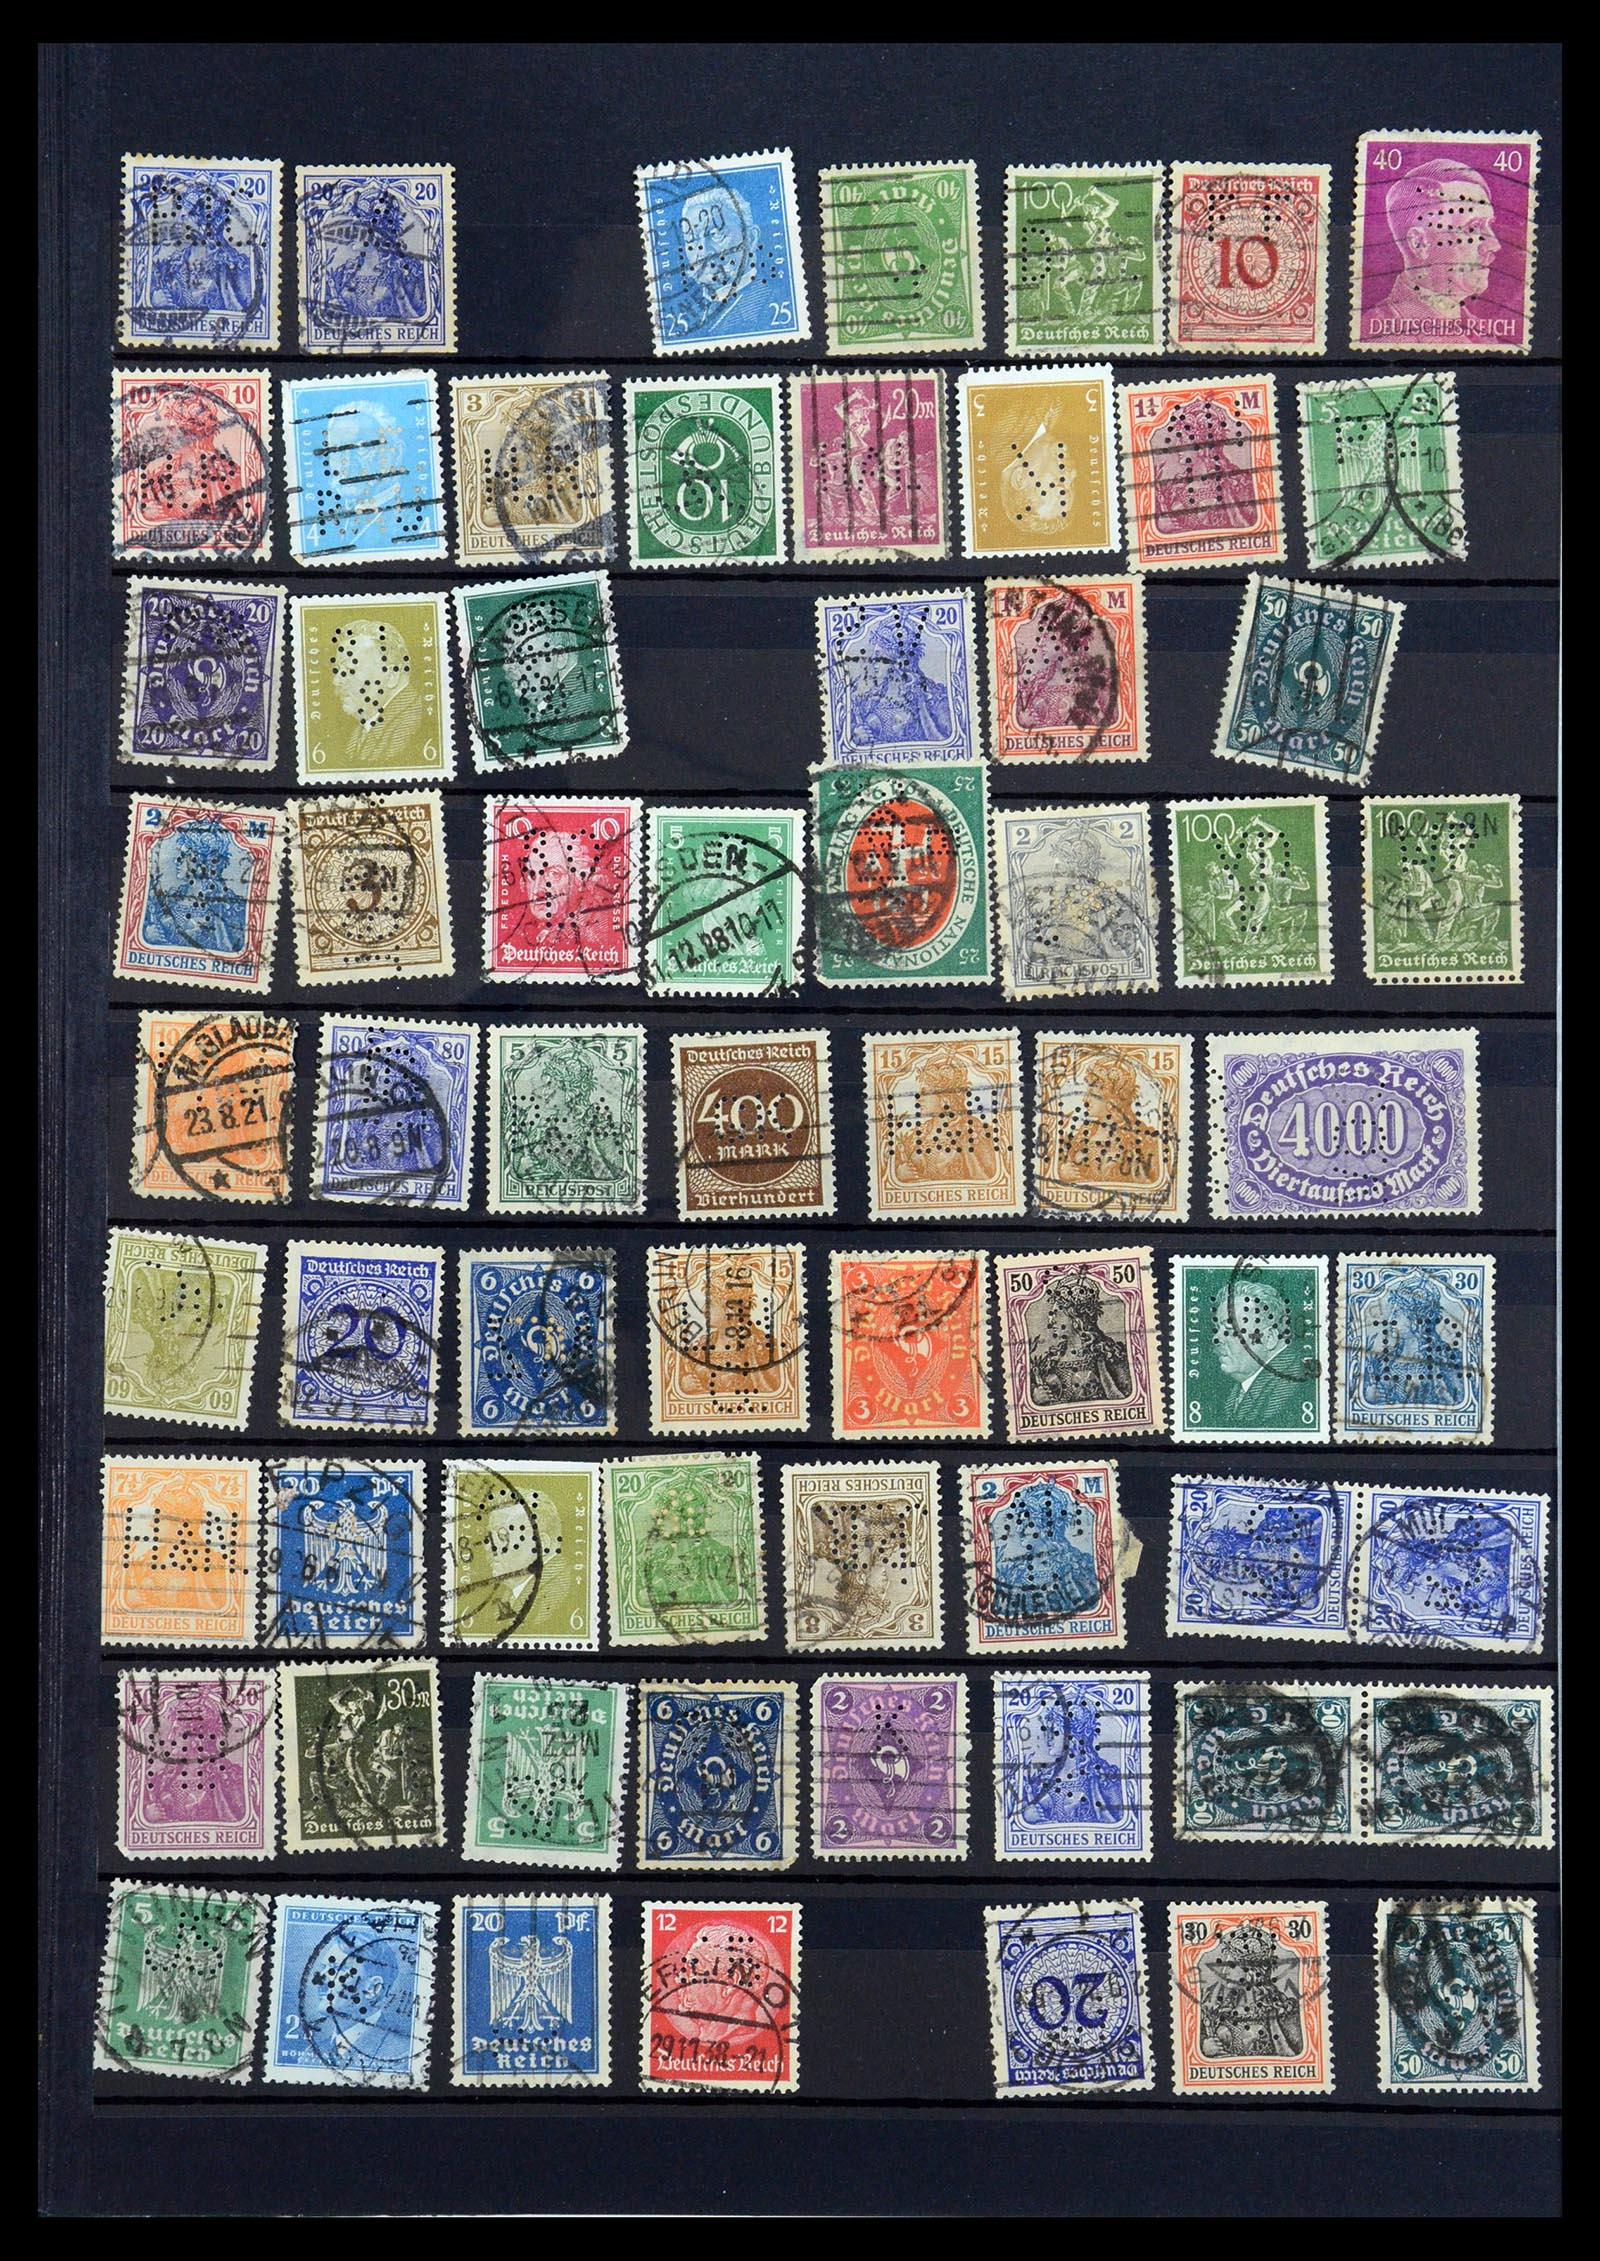 35183 032 - Stamp Collection 35183 German Reich perfins 1880-1945.